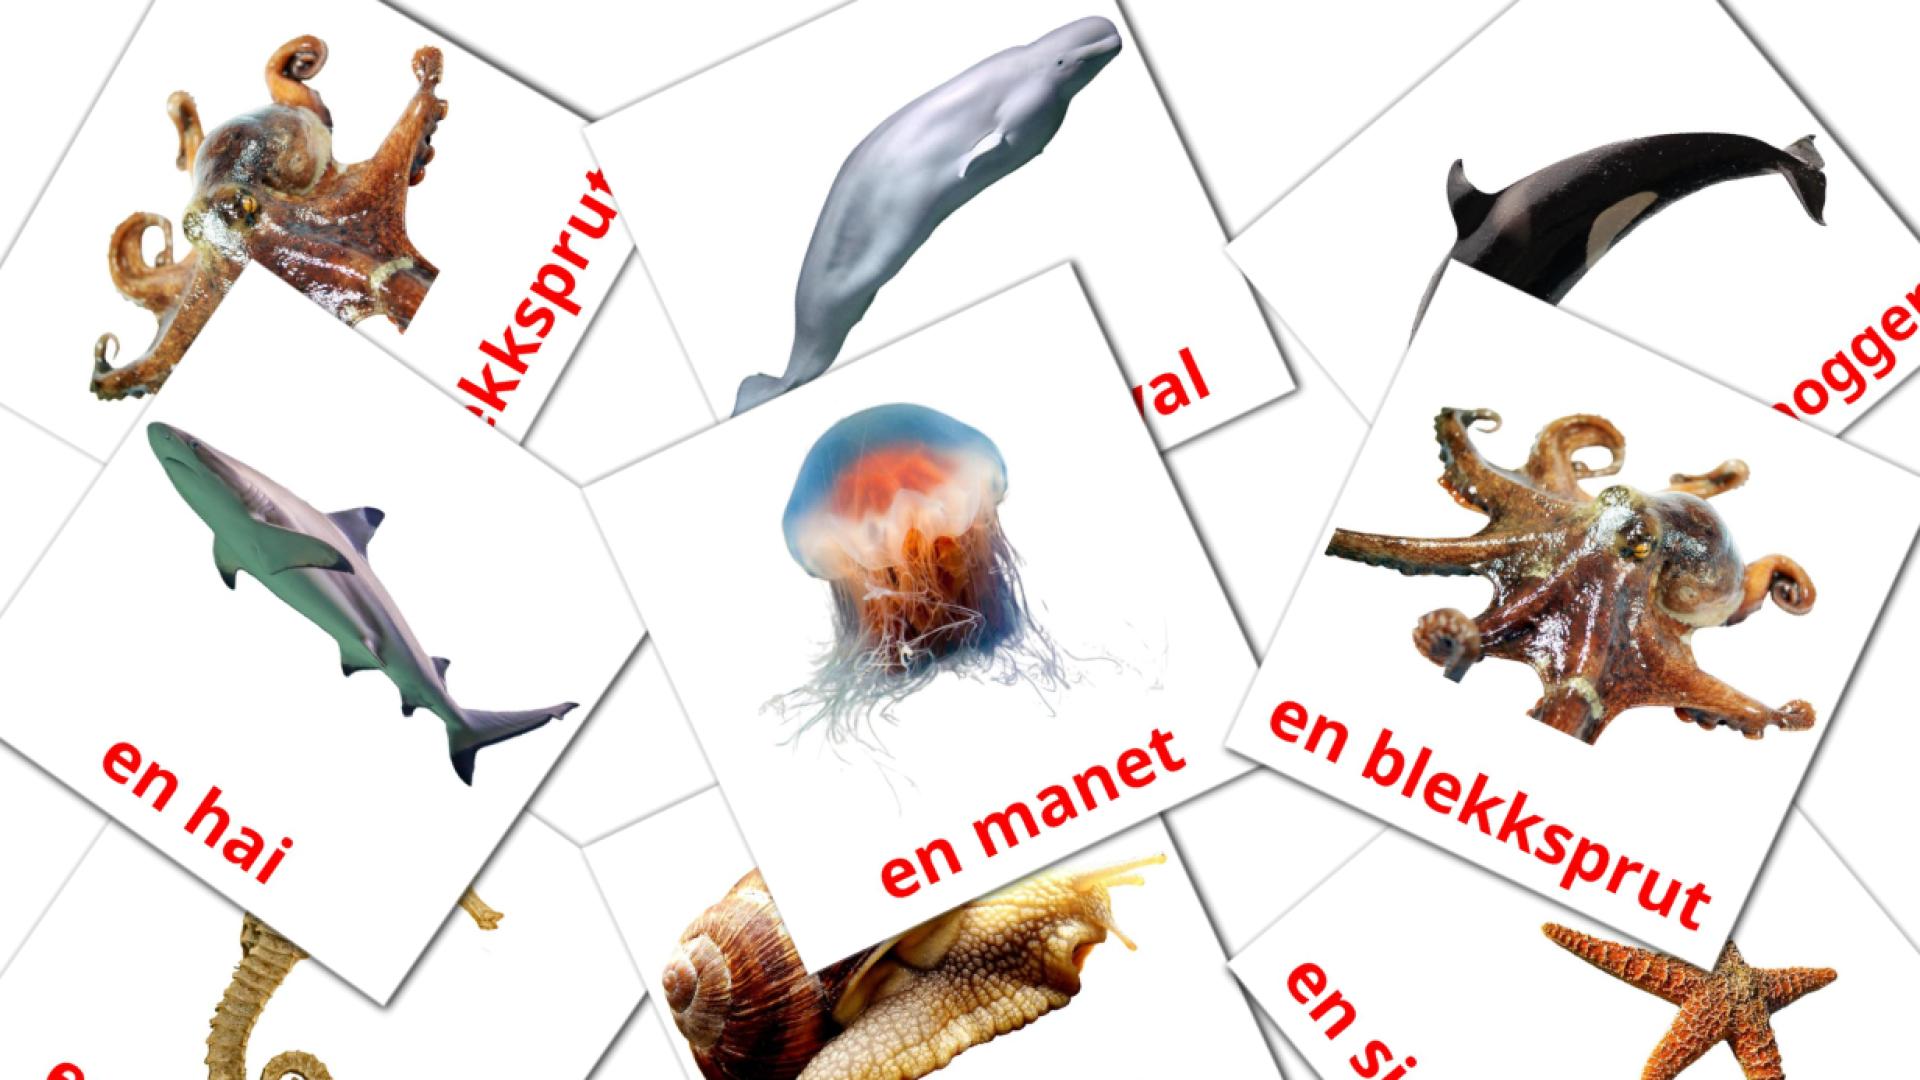 29 Bildkarten für Sjødyr